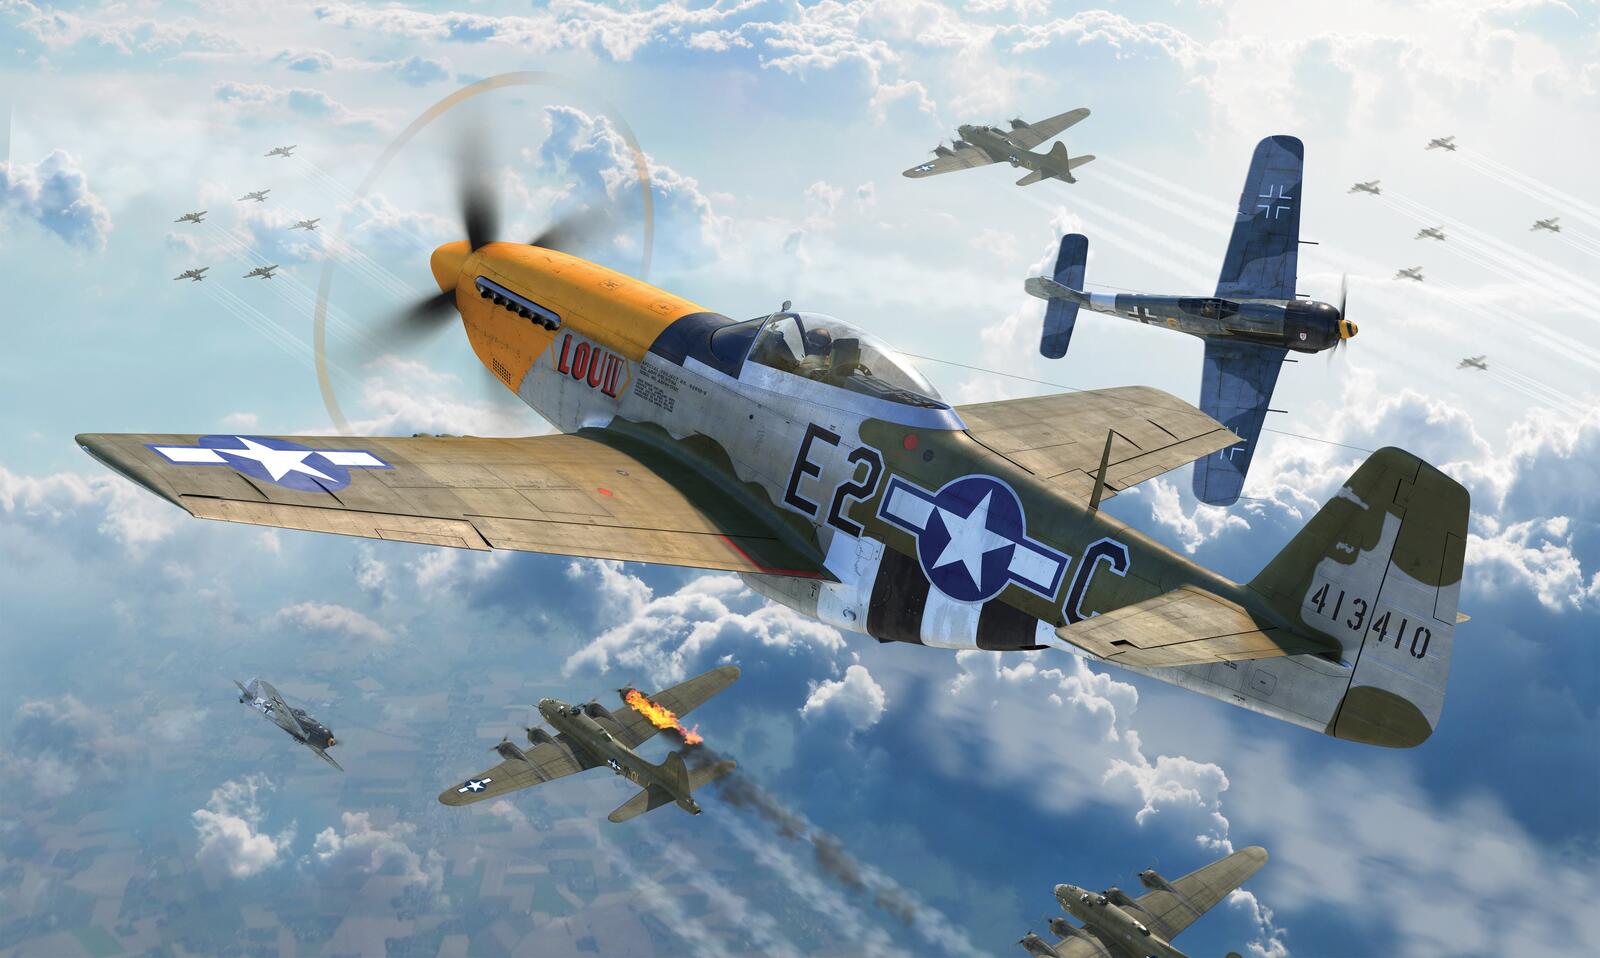 Бесплатное фото P-51 mustang в небе